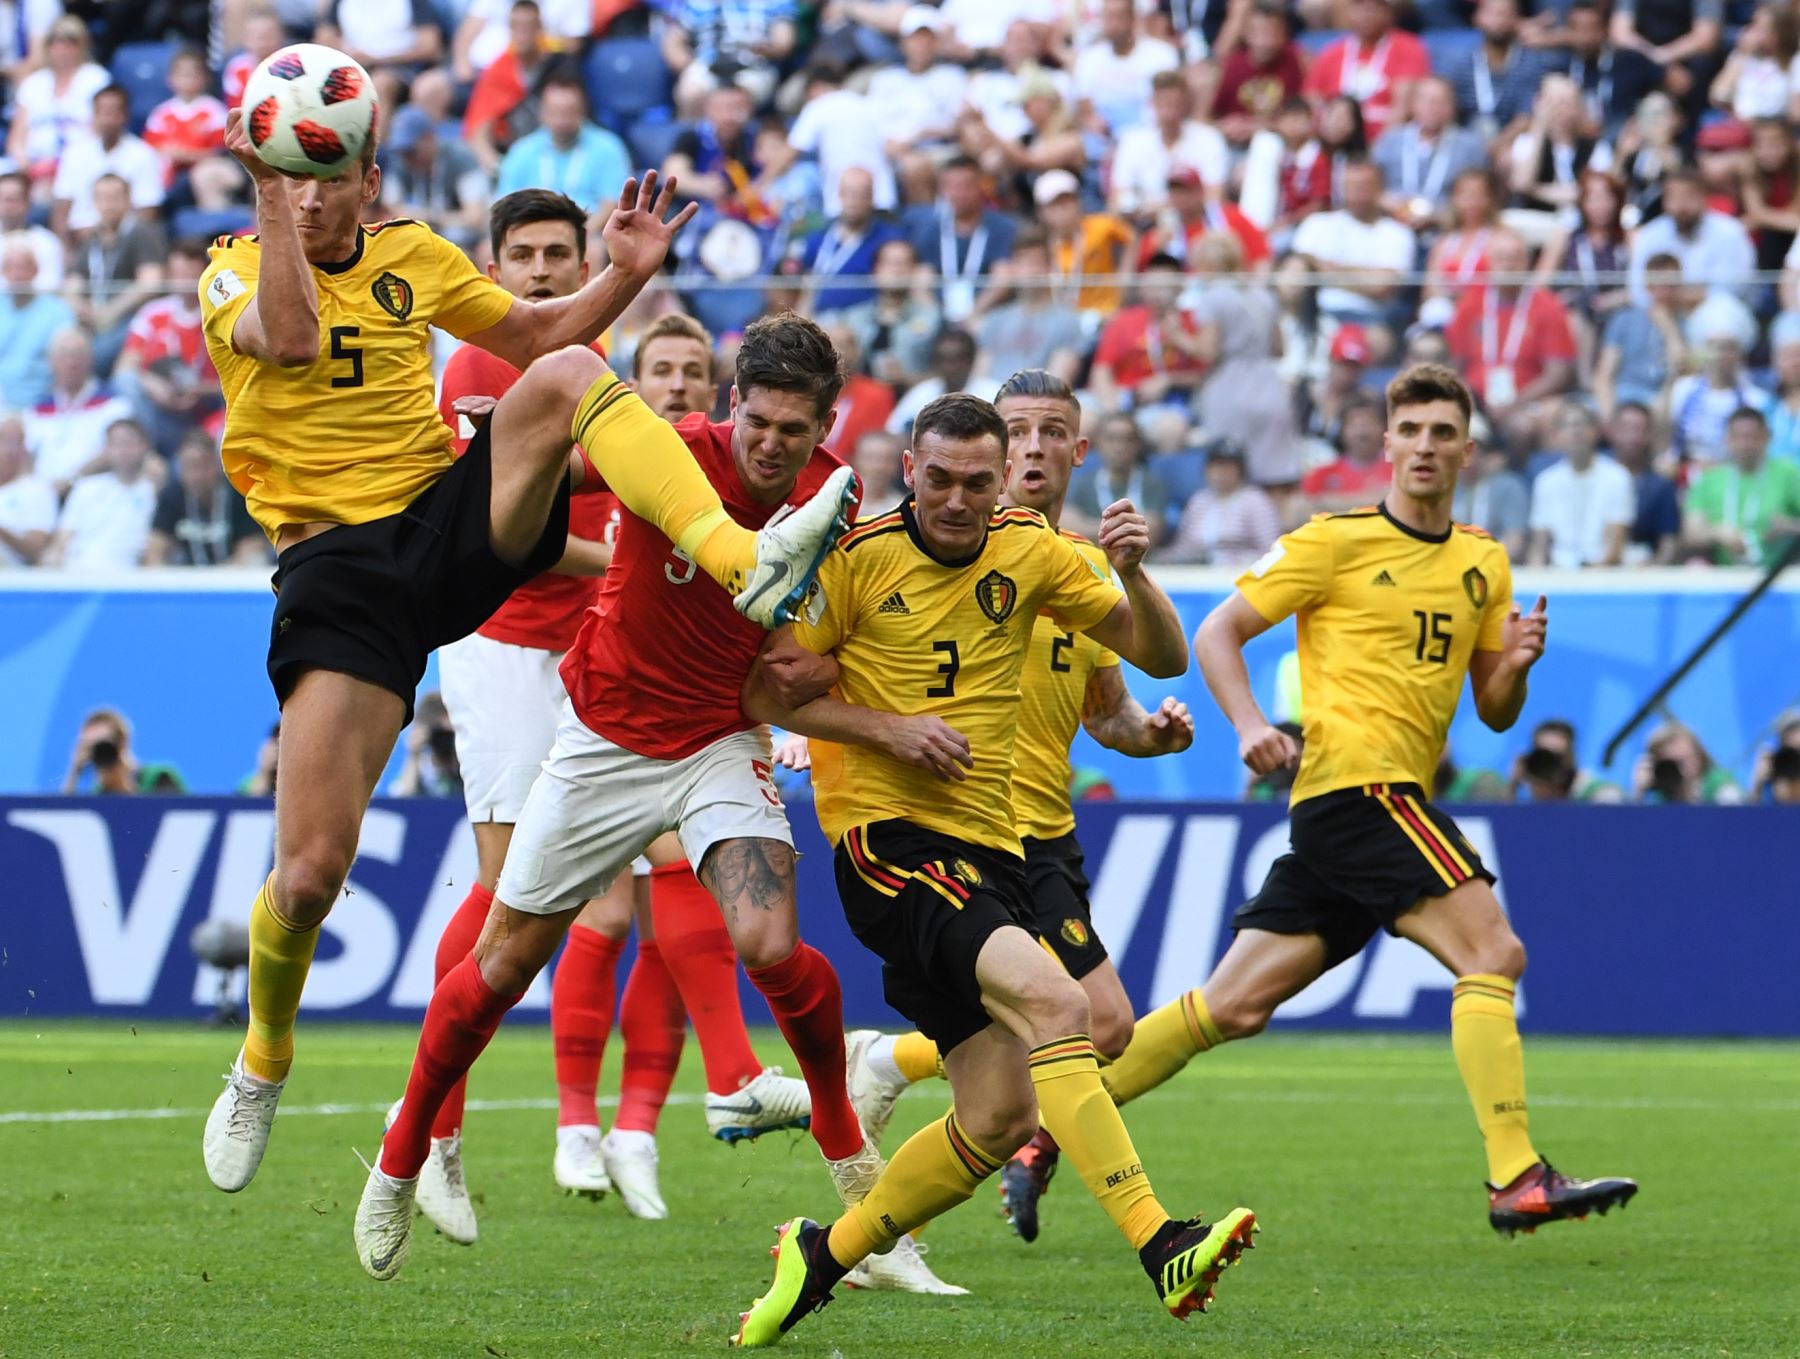 El defensor belga Jan Vertonghen (izq.) Sube a la cabeza durante la eliminatoria de la Copa Mundial Rusia 2018 para el partido de fútbol entre Bélgica e Inglaterra en el estadio de San Petersburgo el 14 de julio de 2018. / AFP